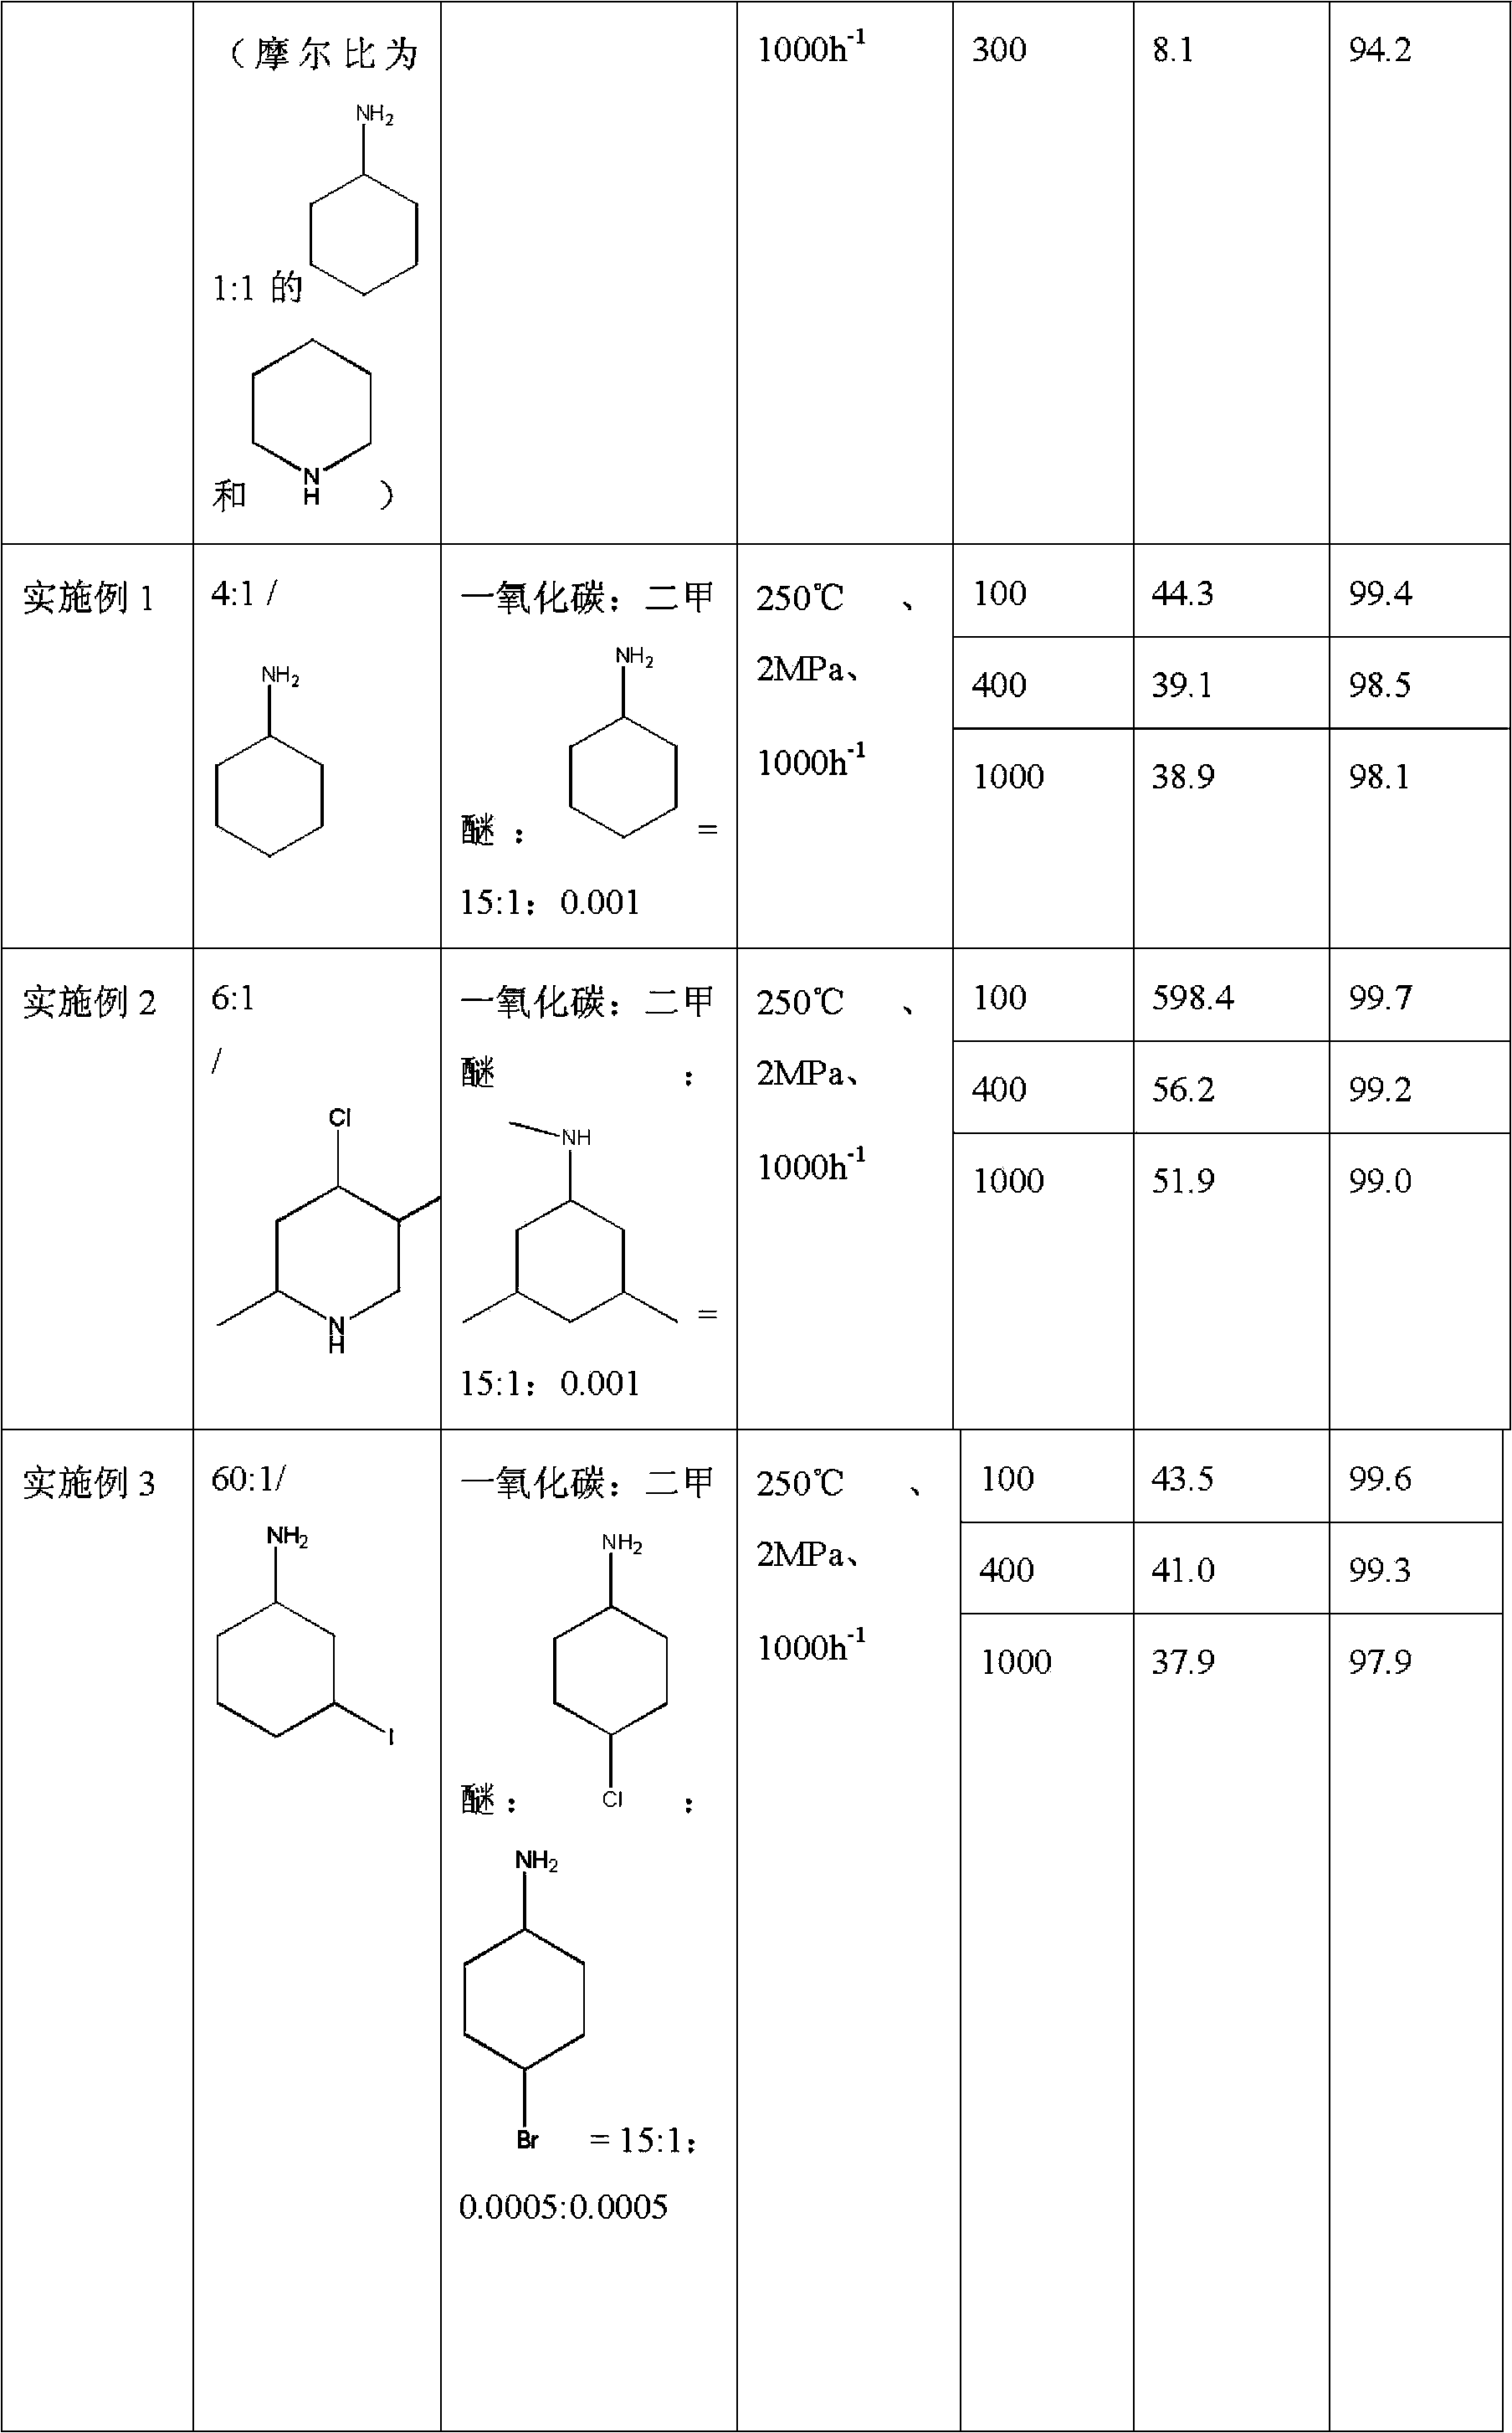 Method used for producing methyl acetate